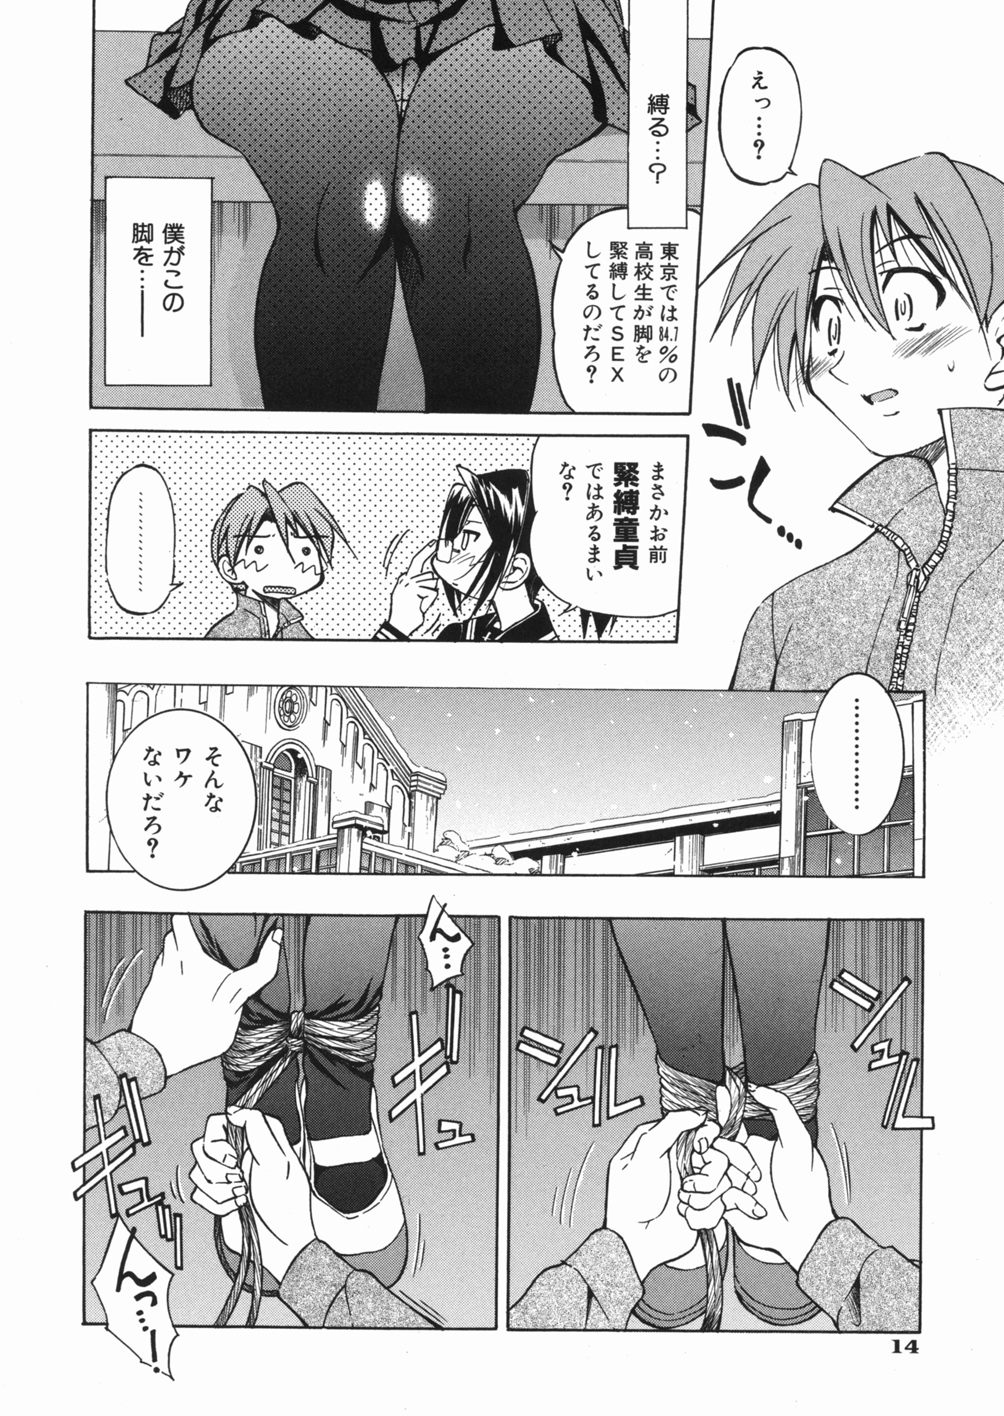 [Inoue Yoshihisa] Sunao page 18 full